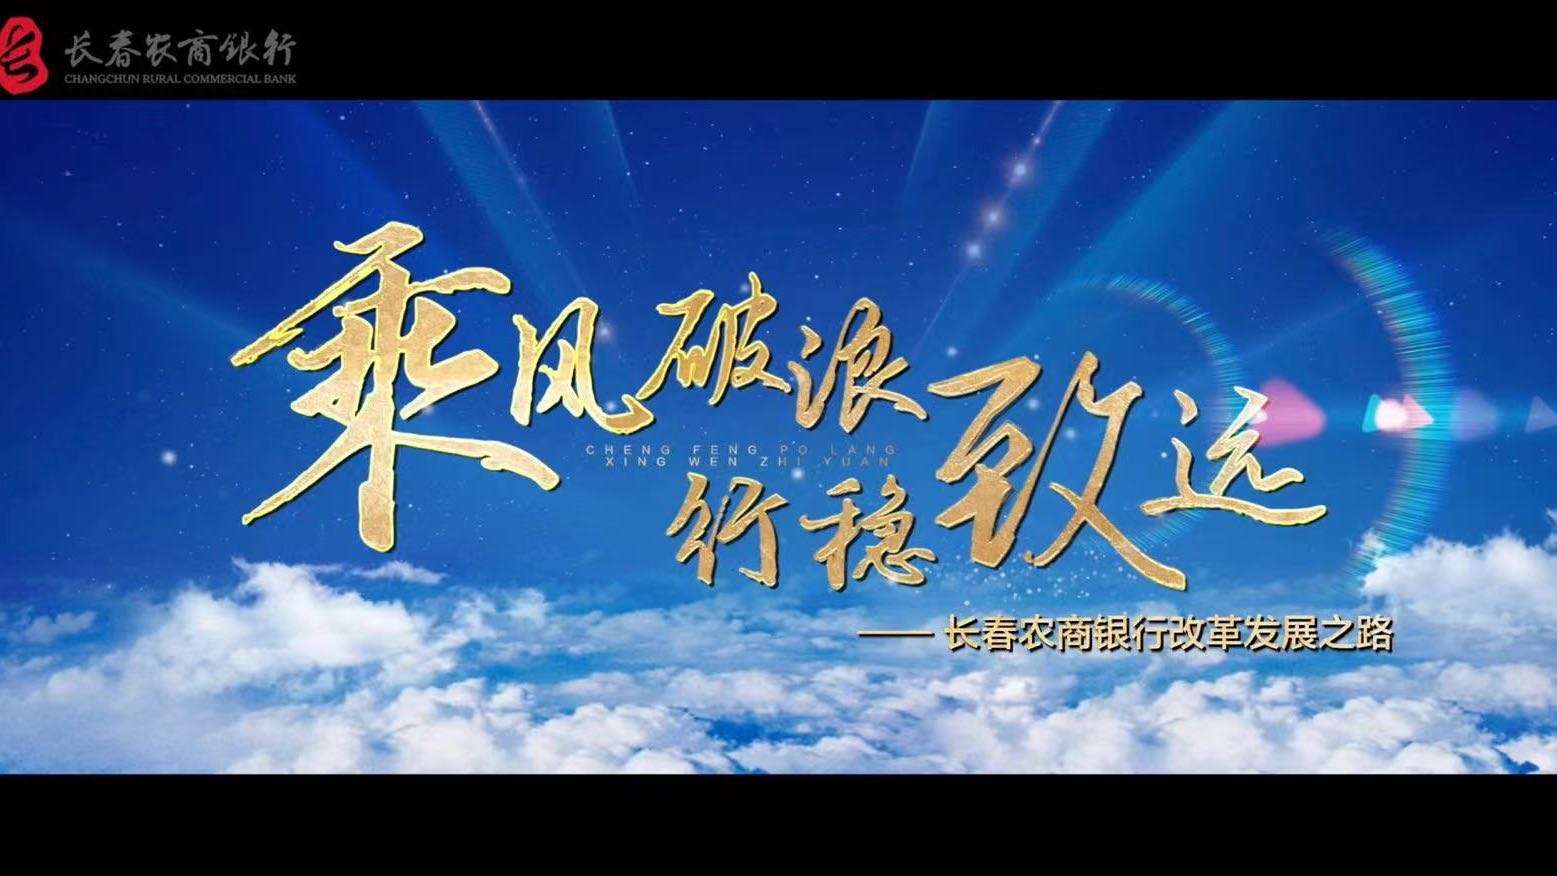 《乘风破浪 行稳致远》——长春农商行改革发展之路宣传片